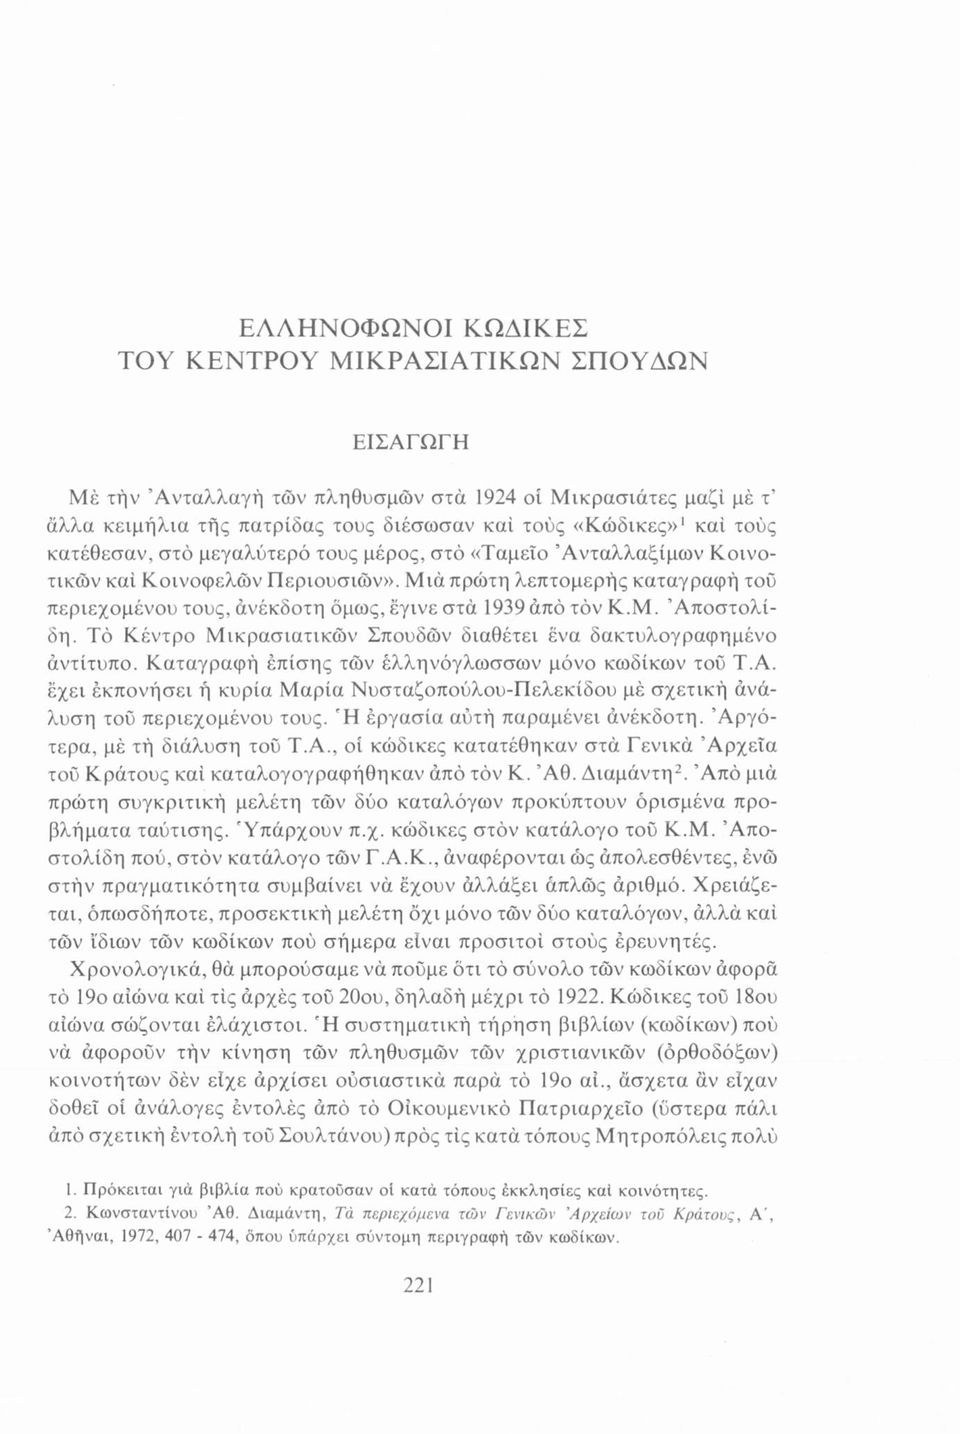 Τό Κέντρο Μικρασιατικών Σπουδών διαθέτει ένα δακτυλογραφημένο άντίτυπο. Καταγραφή επίσης τών ελληνόγλωσσων μόνο κωδίκων του Τ.Α.